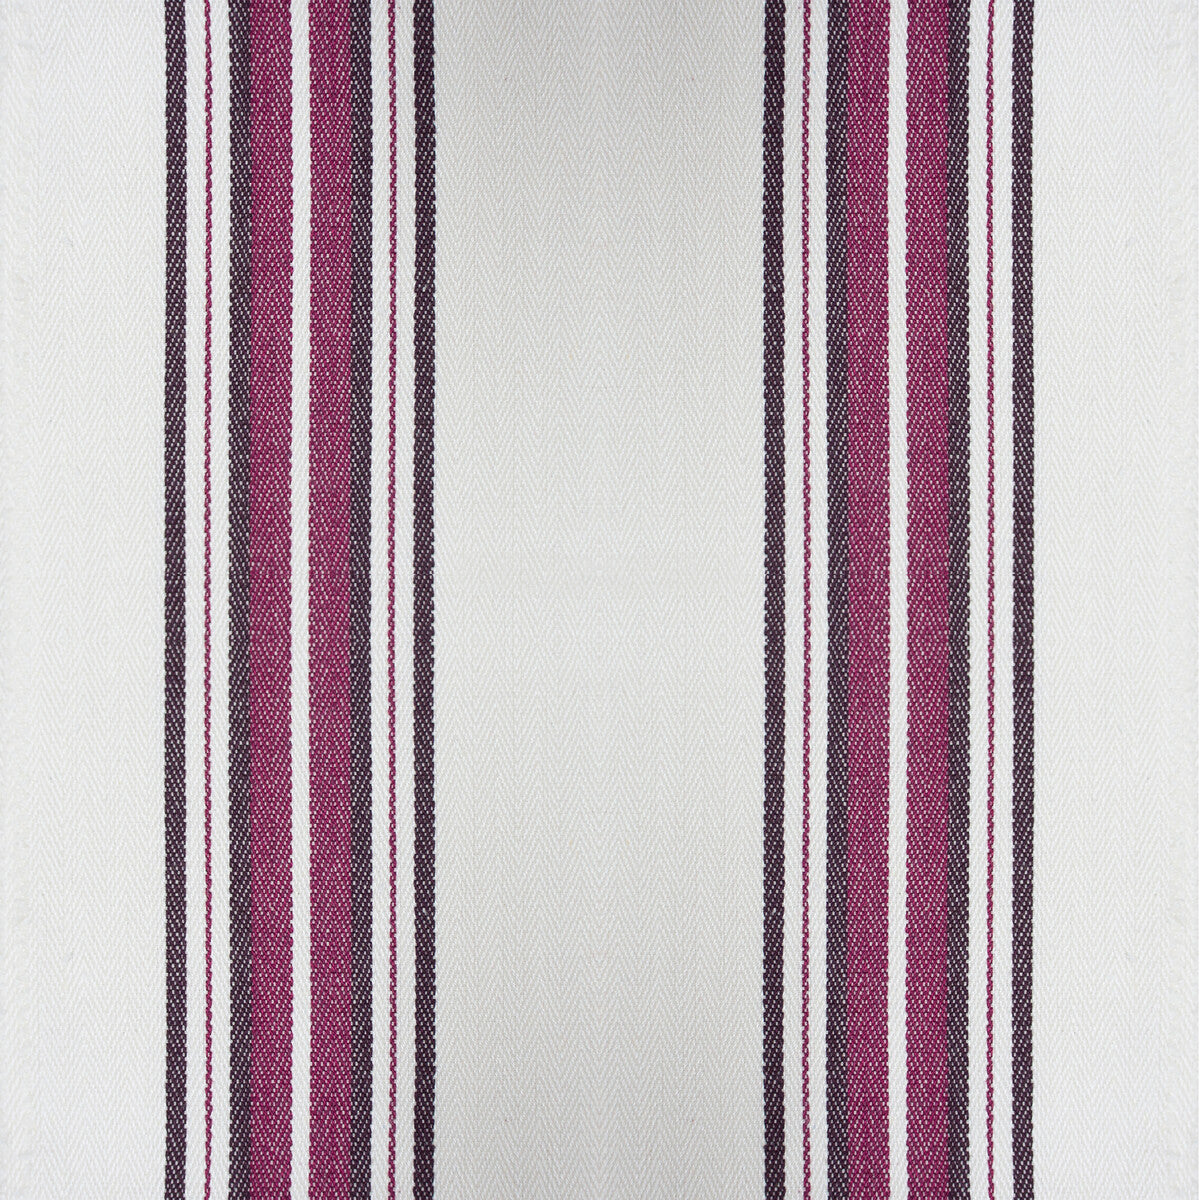 Nueva York fabric in vino color - pattern GDT5573.005.0 - by Gaston y Daniela in the Gaston Luis Bustamante collection